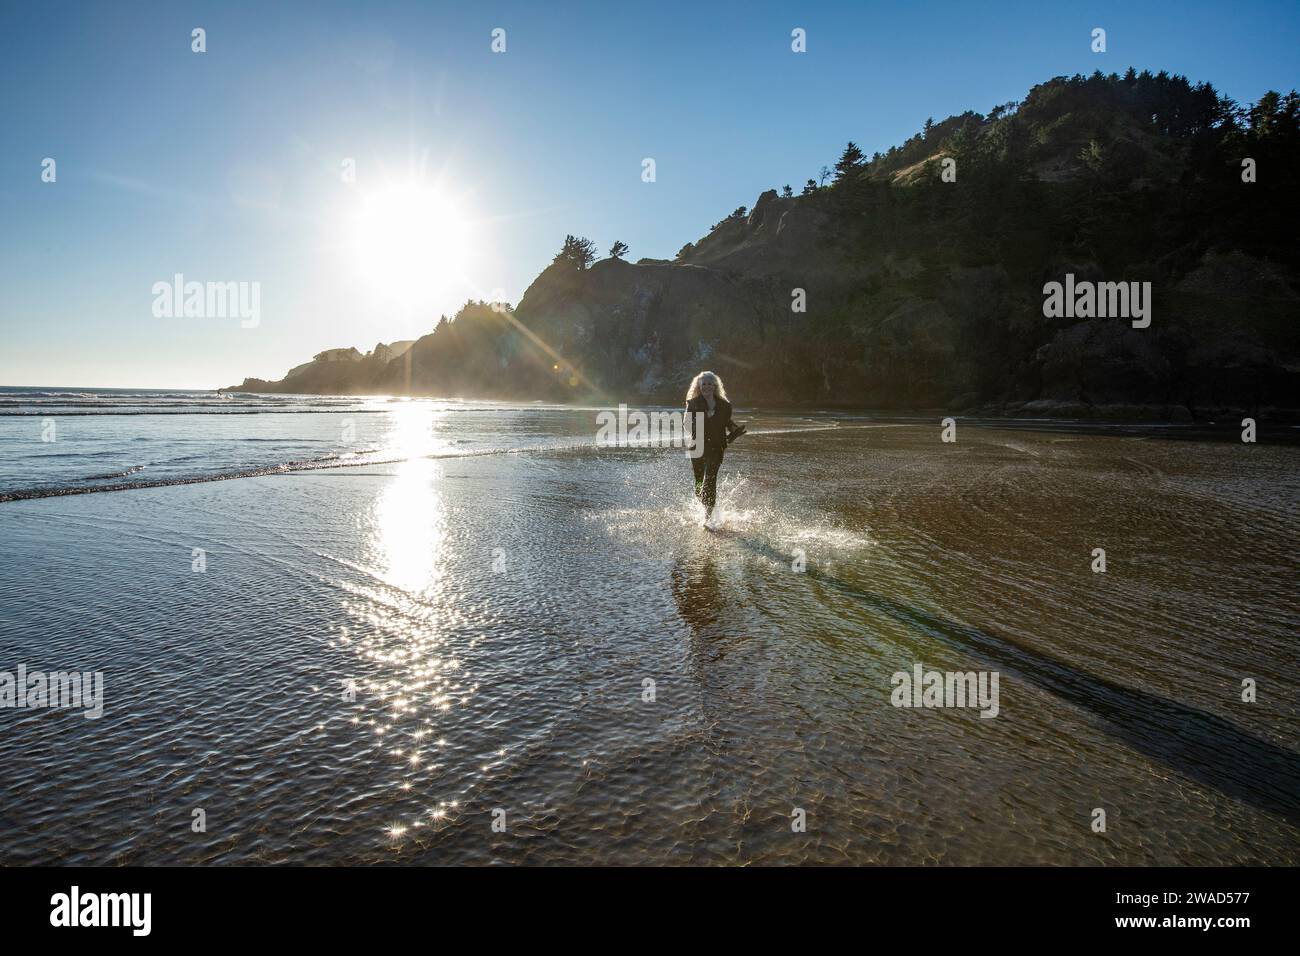 USA, Oregon, Newport, femme courant sur la plage de sable et éclaboussant de l'eau Banque D'Images